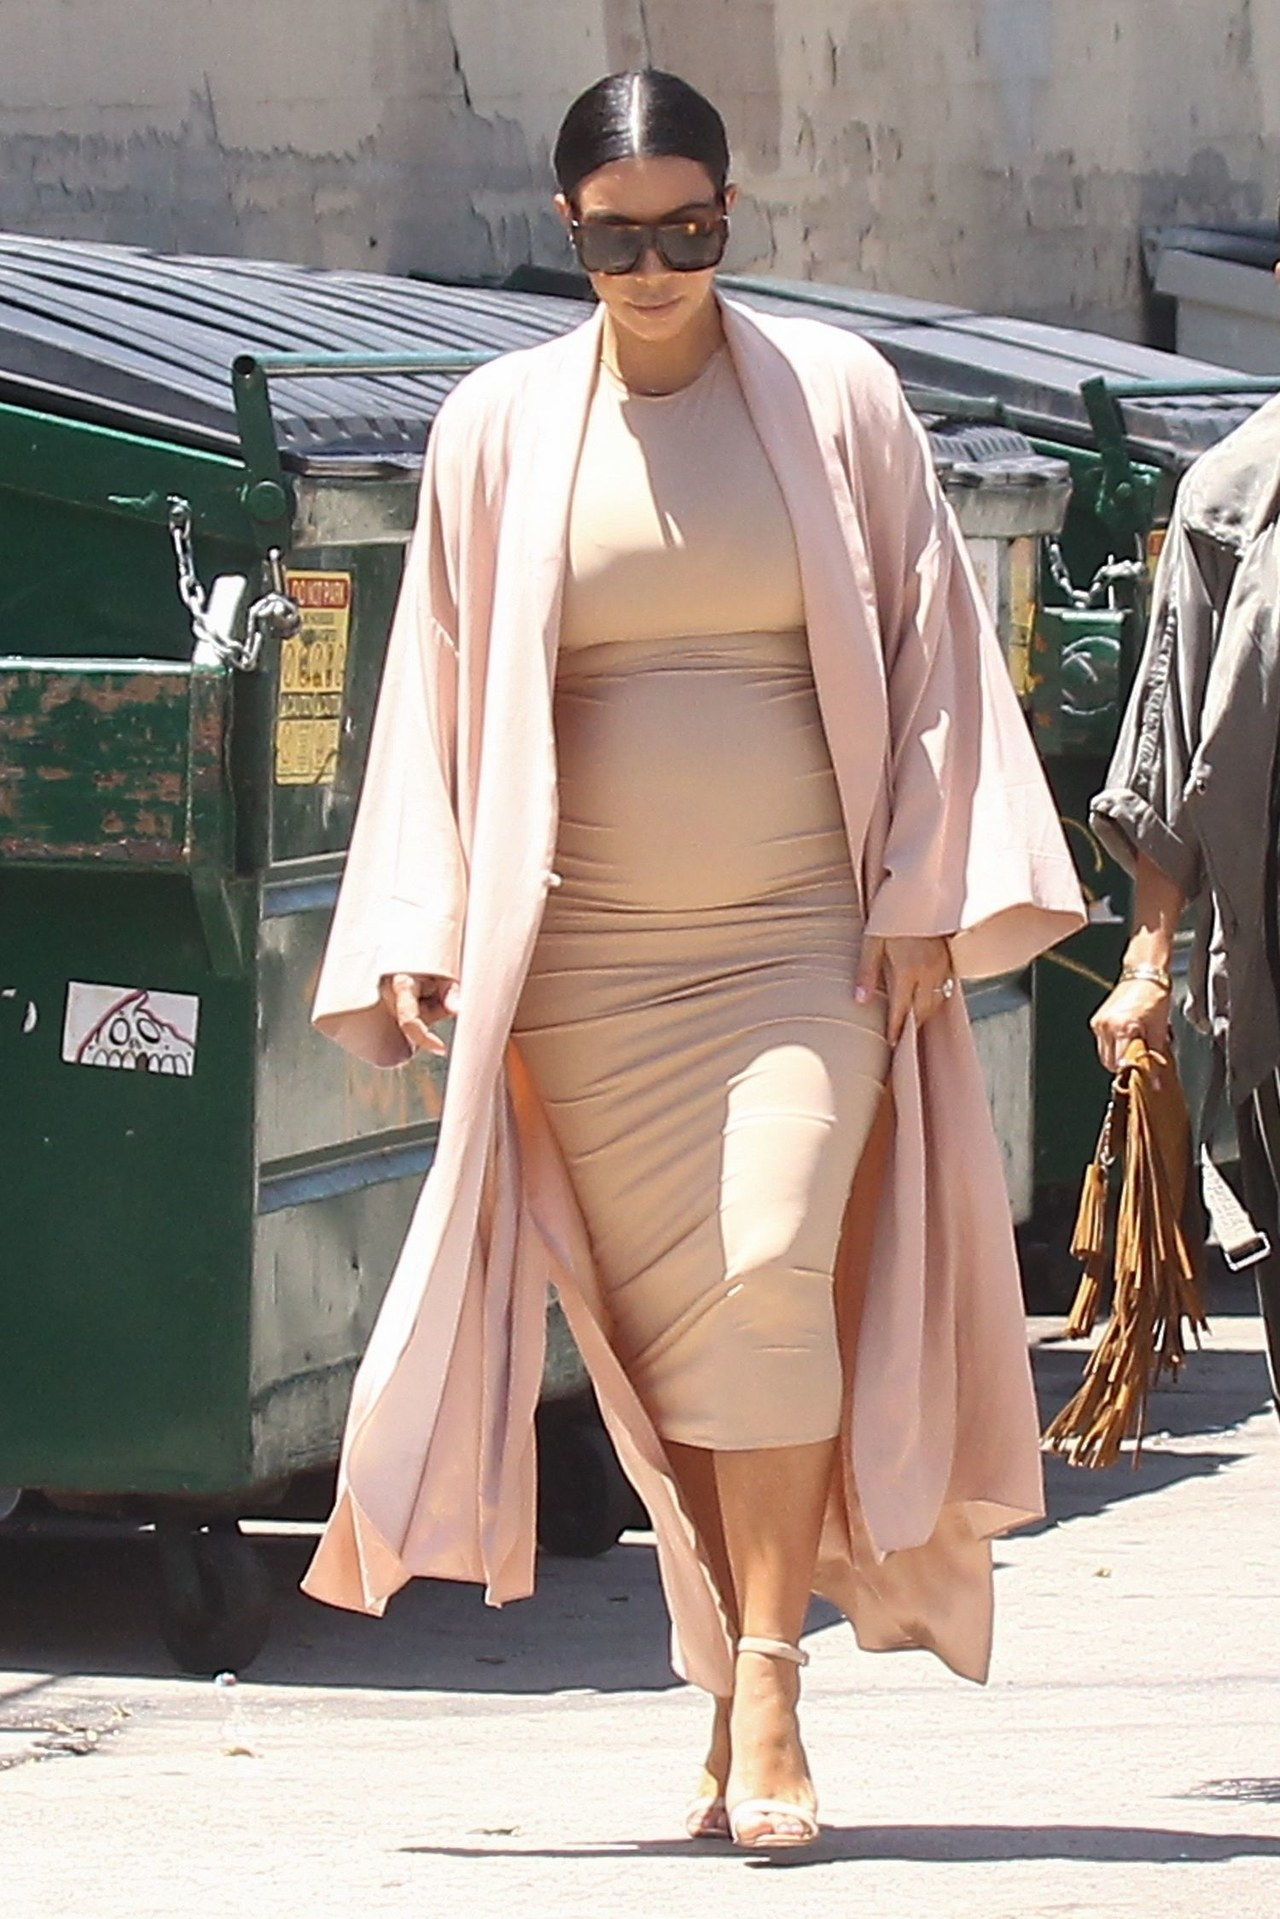 金 kardashian west nude outfit july 2015